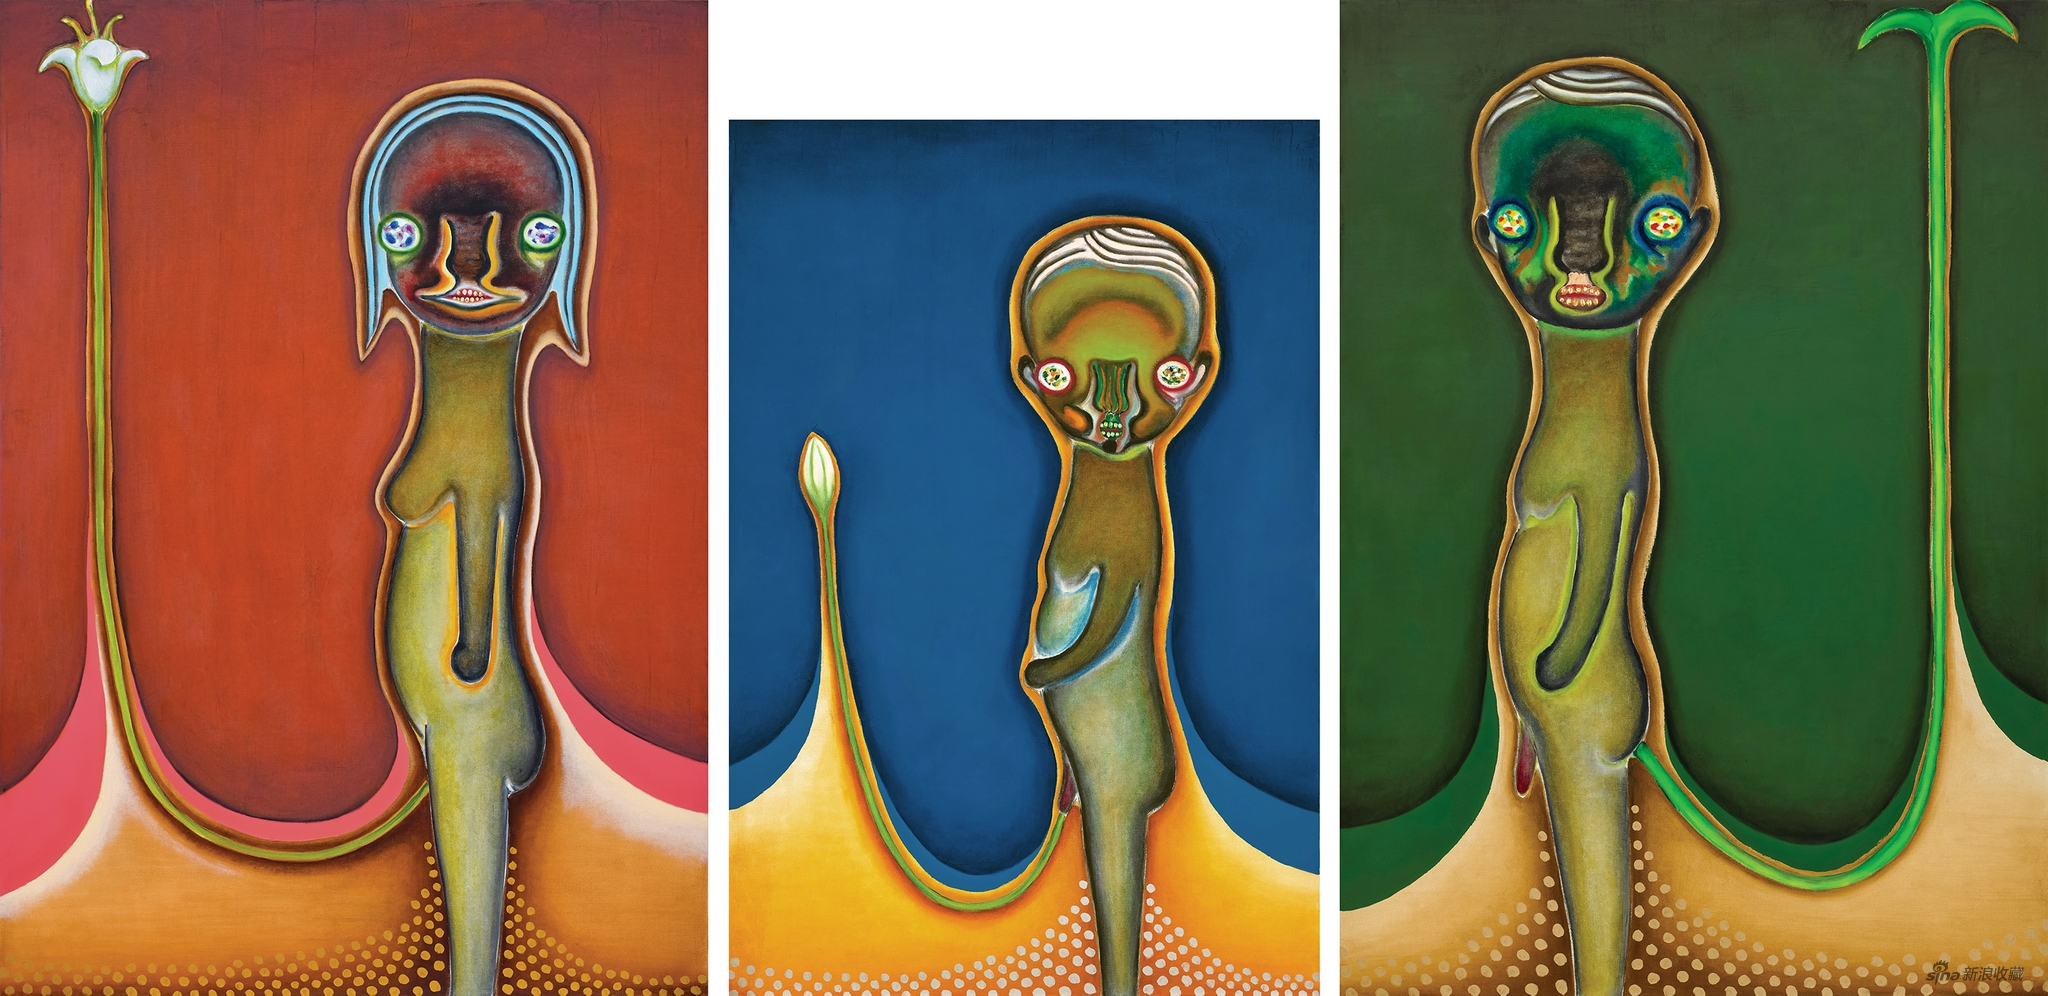 加藤泉《无题》 2003年作，油彩 画布（三联屏），227.3 x 162.1 cm； 194 x 130.3 cm； 227.3 x 162.1 cm